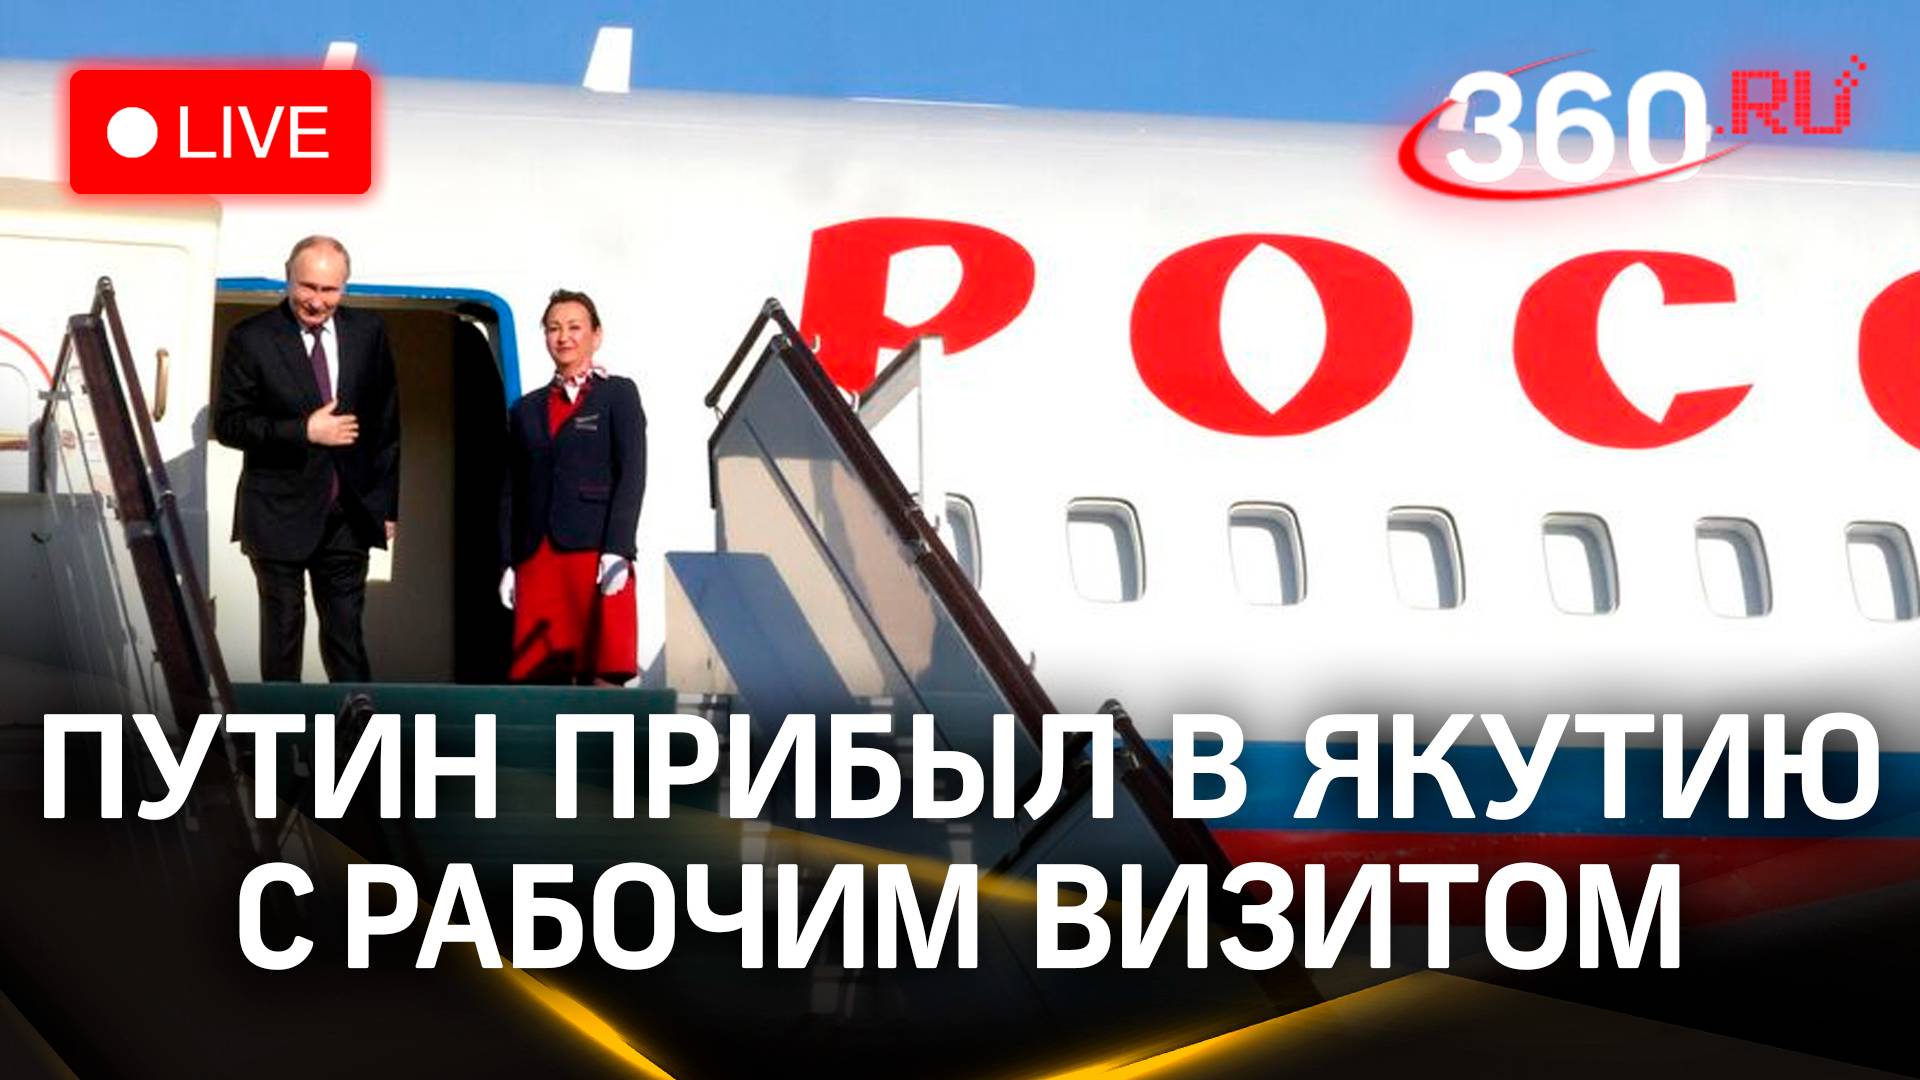 Владимир Путин посещает Якутию с рабочим визитом | Трансляция